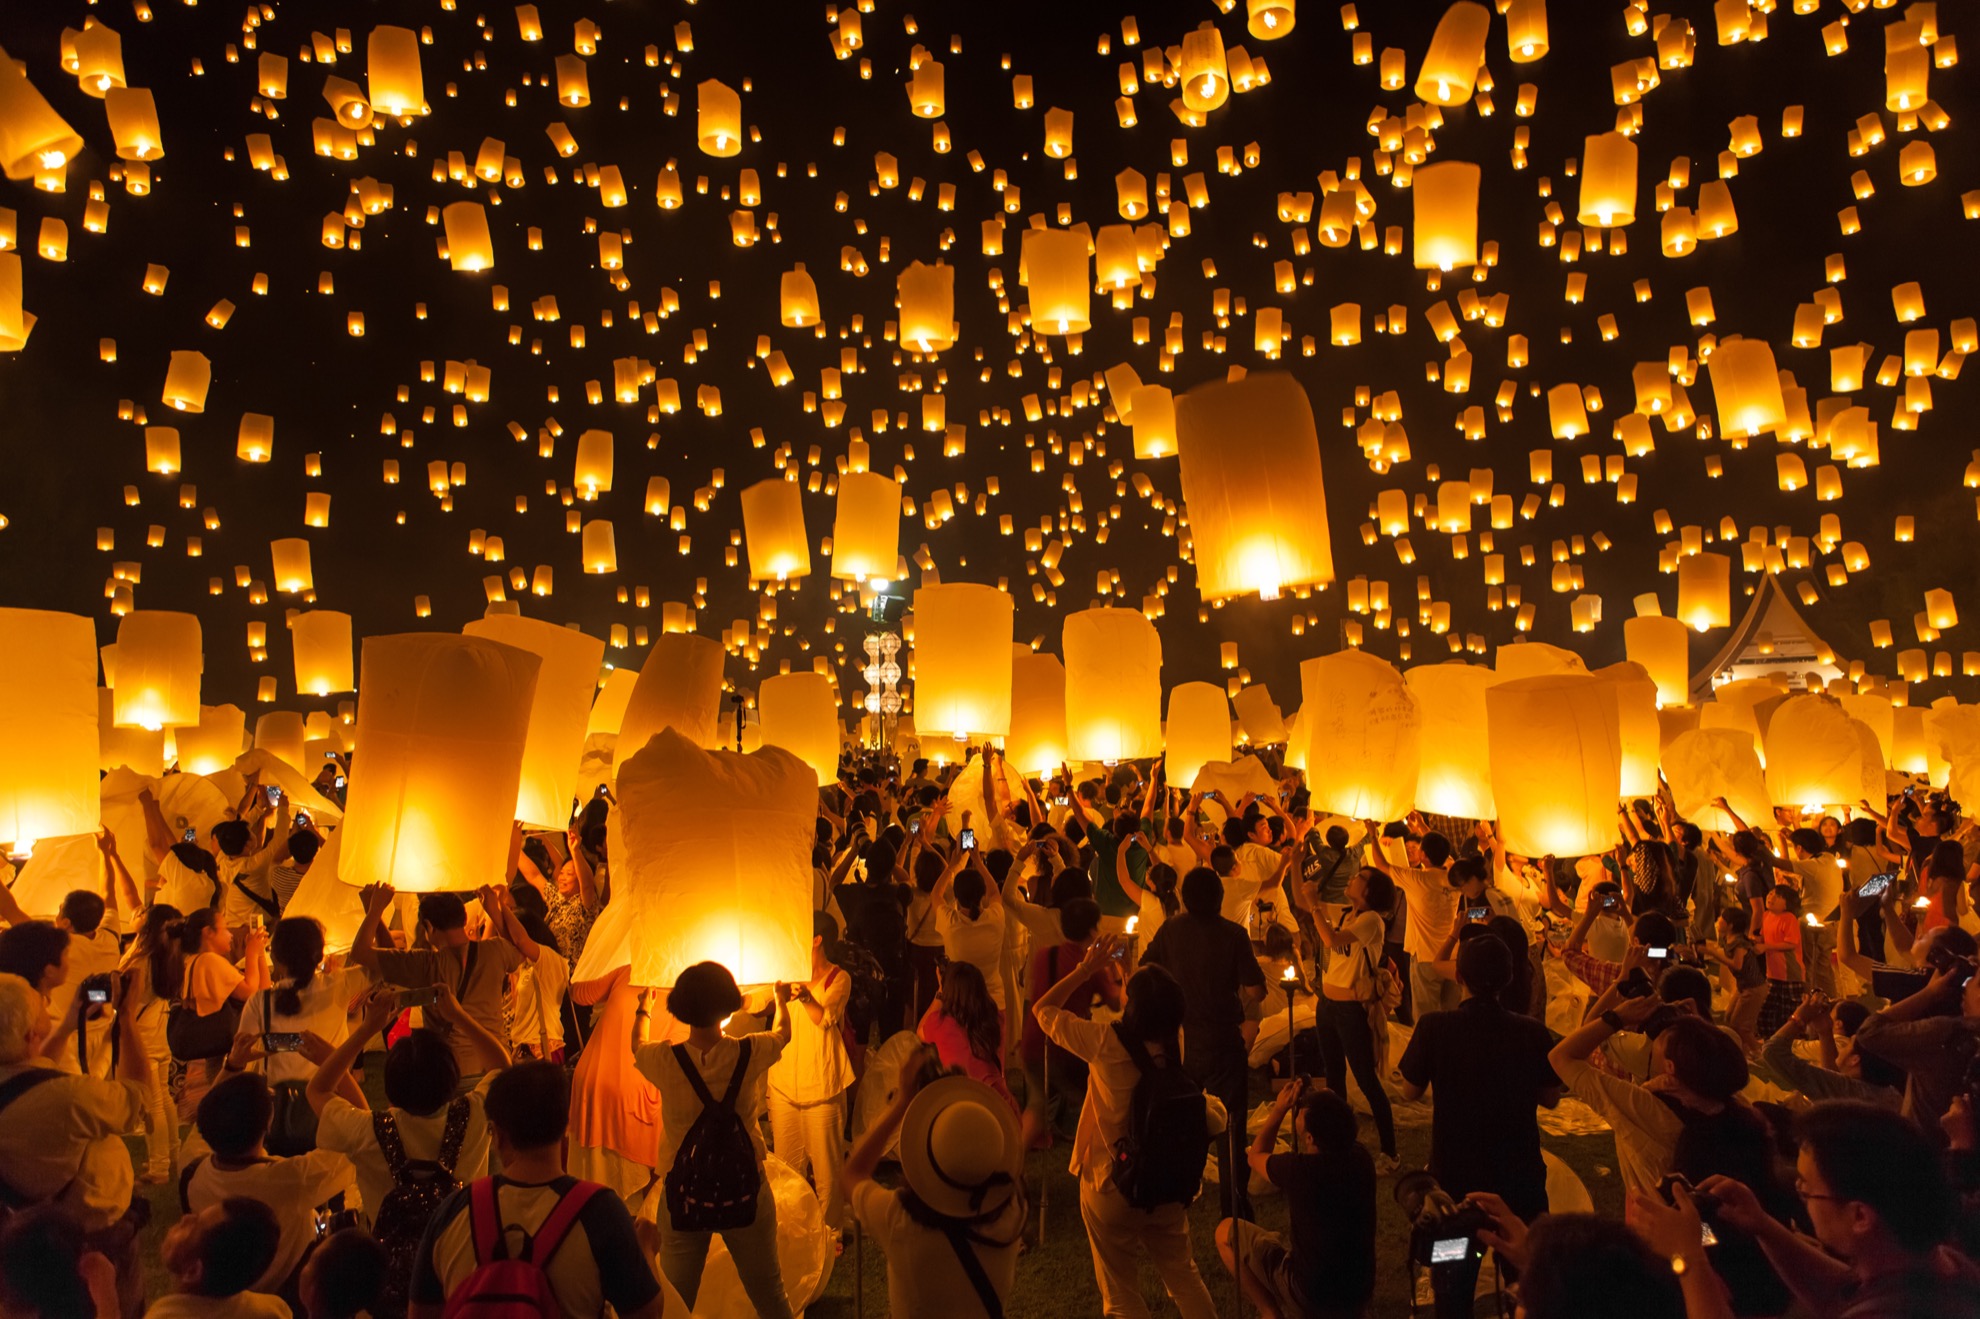 7 Datos rápidos sobre el festival Yi Peng Lantern de Tailandia - 11